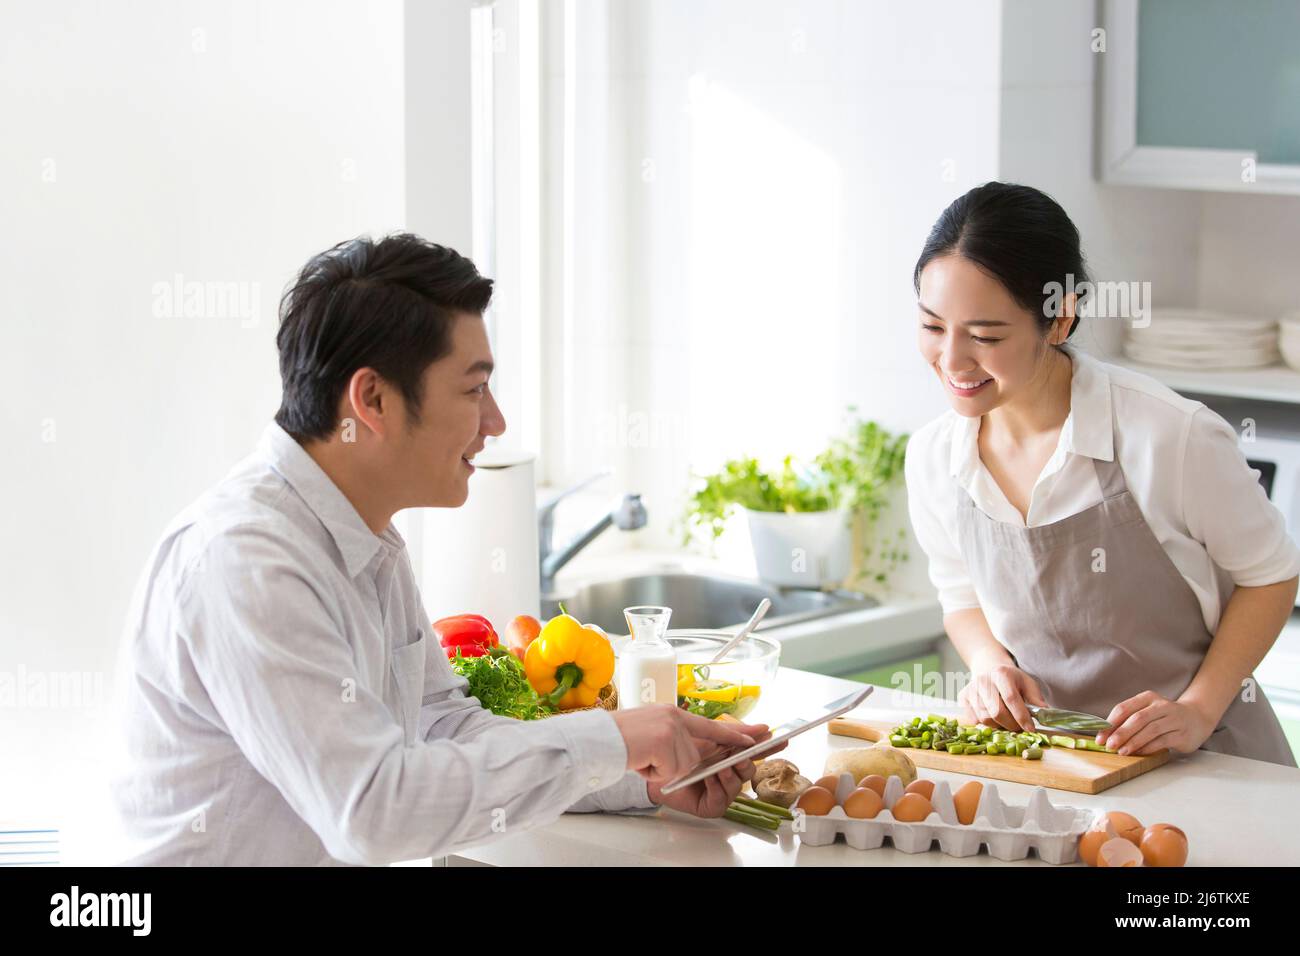 Dans la cuisine familiale, un jeune couple aime cuisiner ensemble. Ils utilisent des tablettes pour regarder la planification financière - photo de stock Banque D'Images